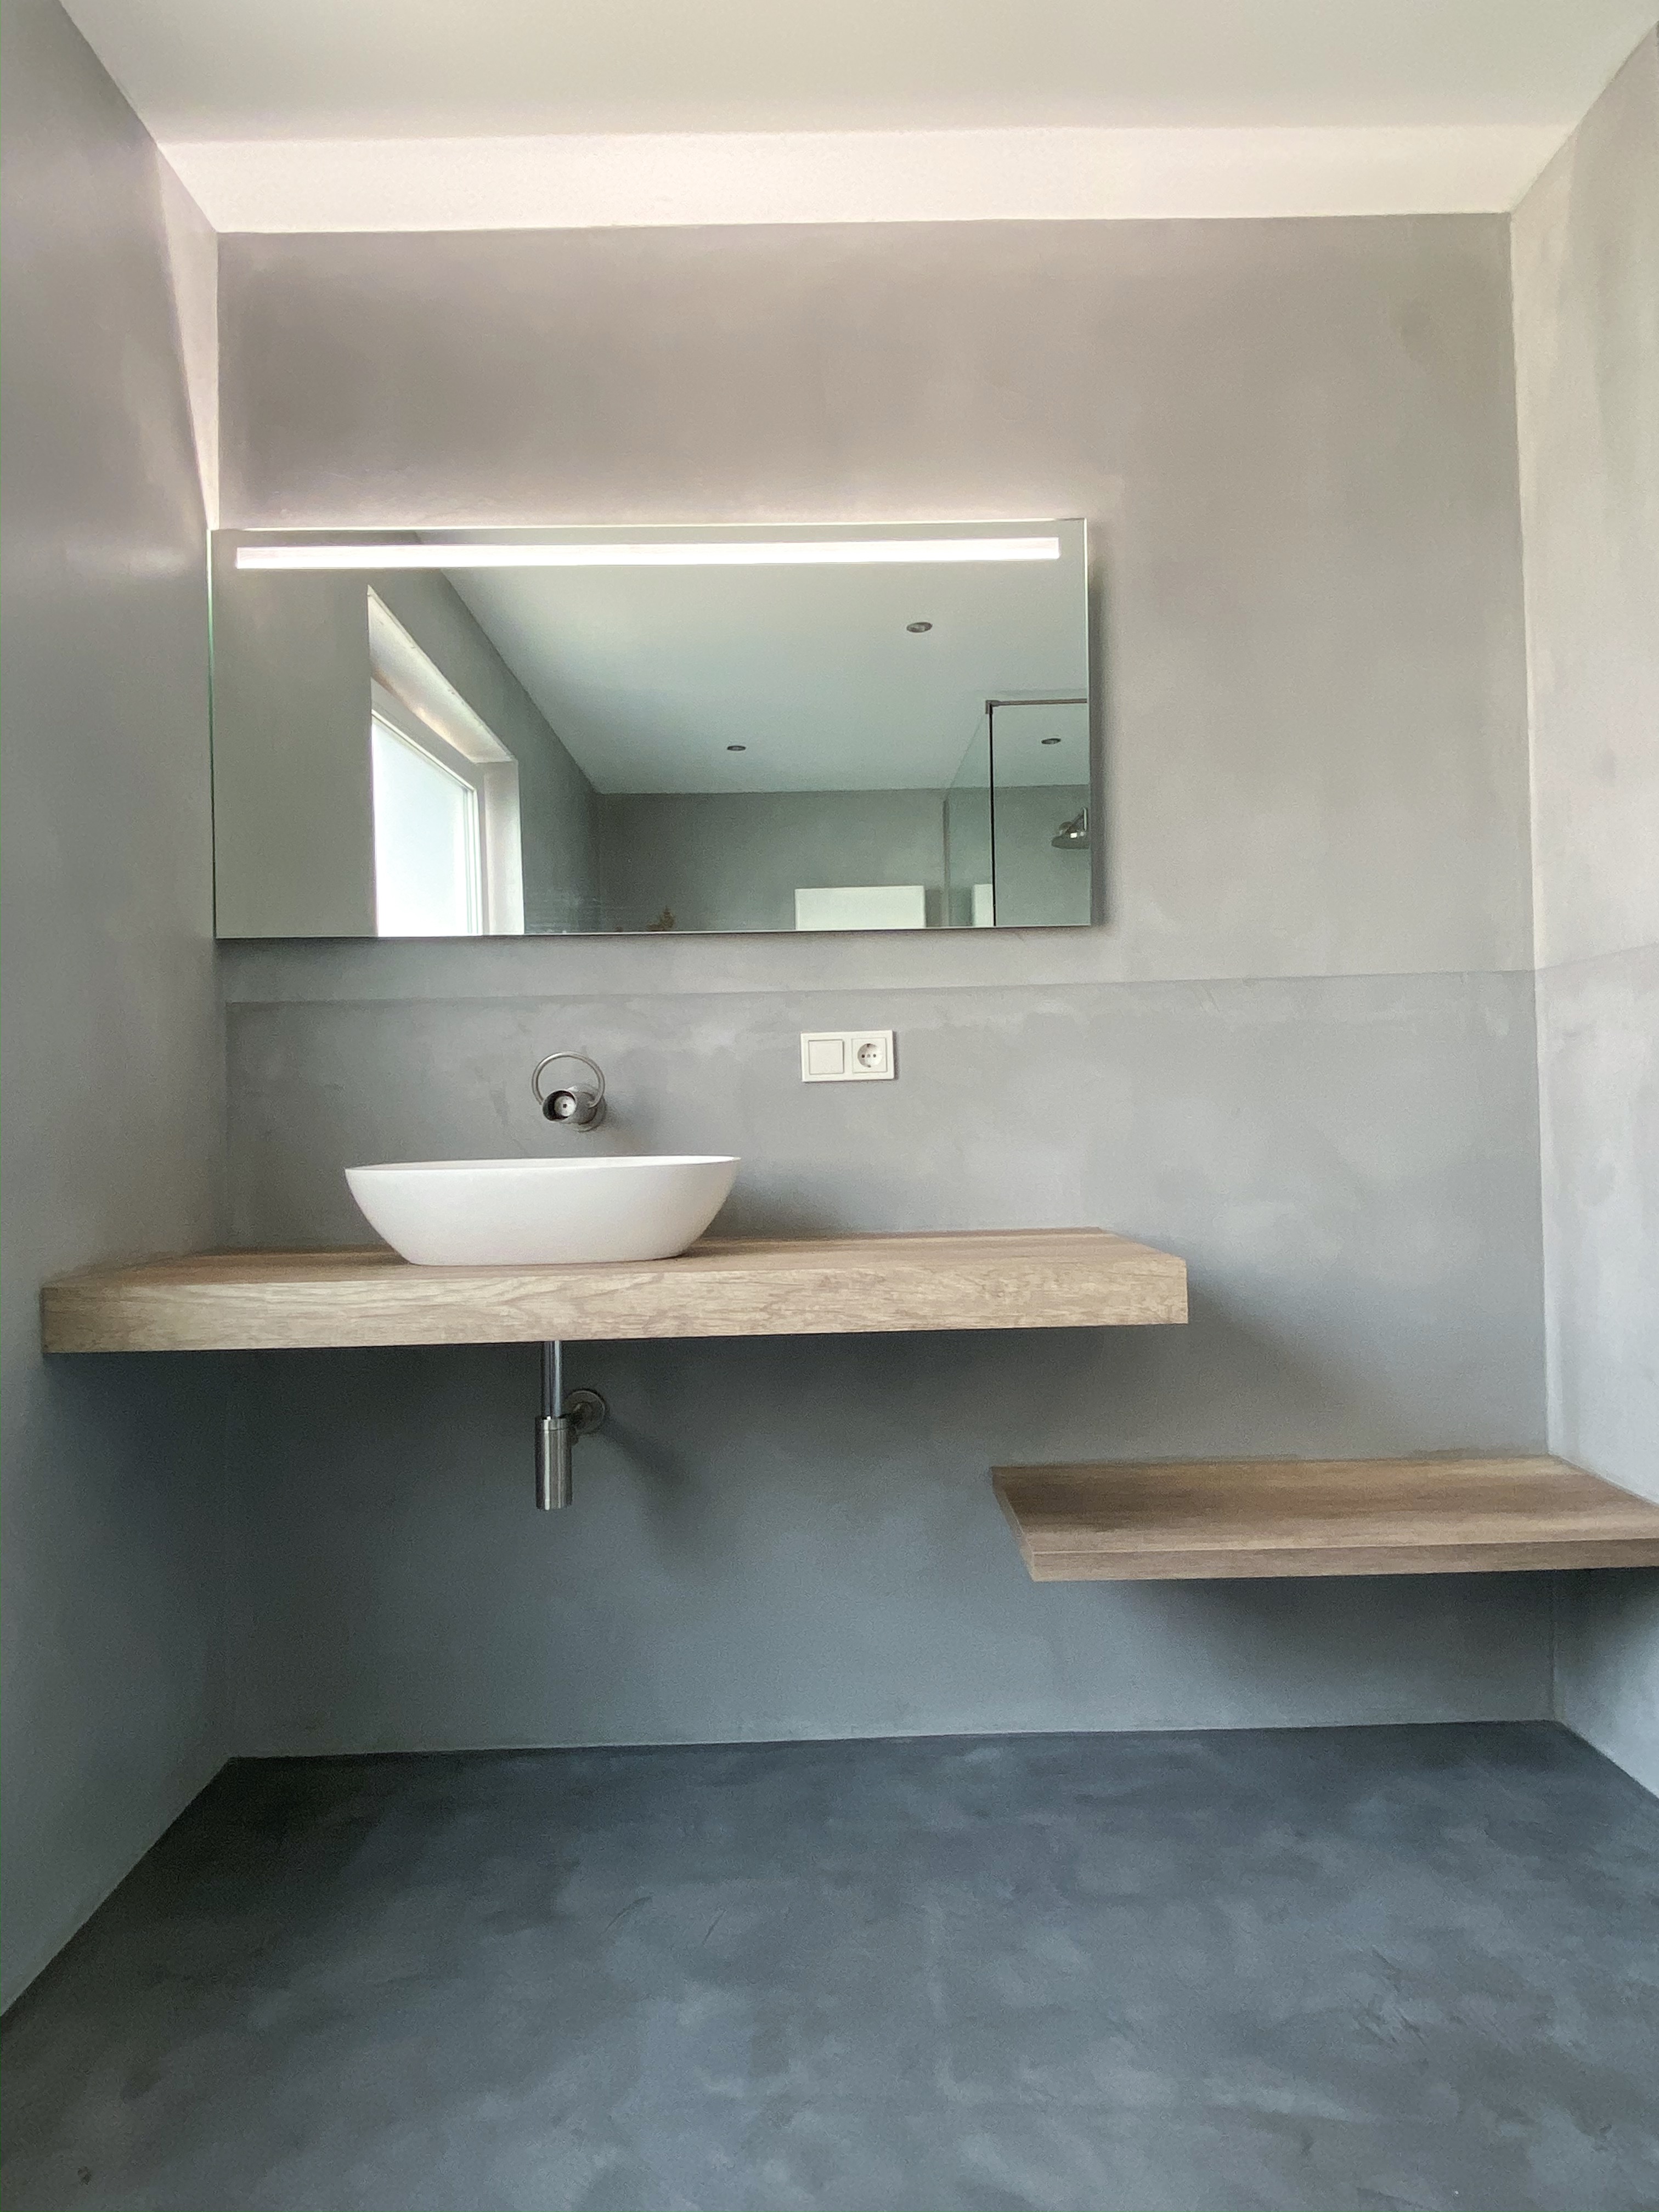 Beton-Cire Beton Optik Badezimmer Beton Style Betonoptik Sanierung Hausbau bauen Betonstyle badsanierung bad
